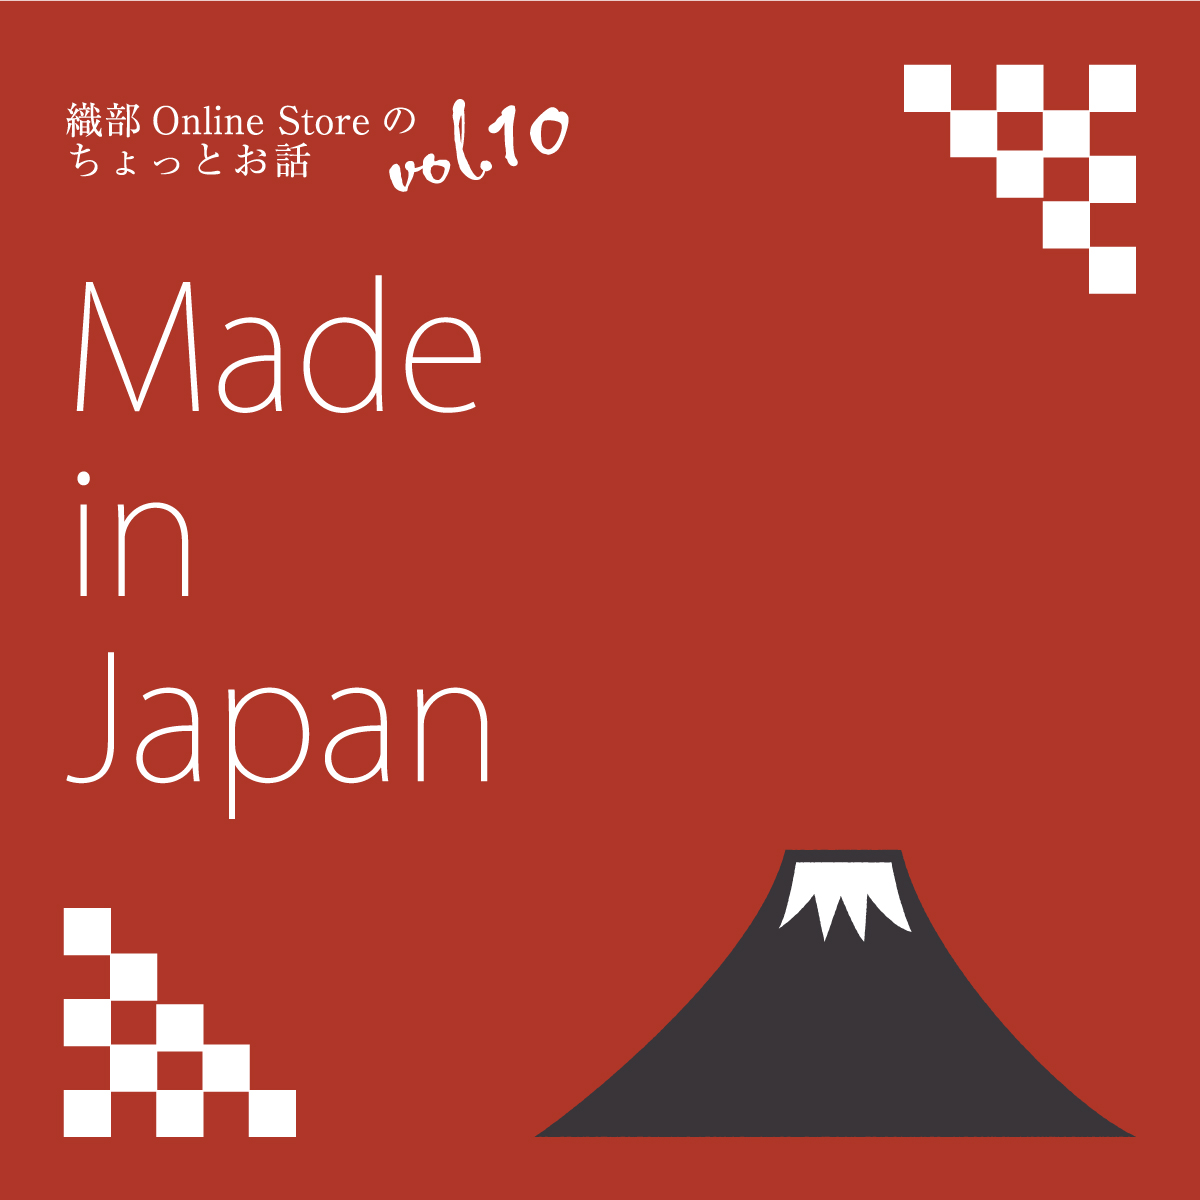 織部 Online Storeのちょっとお話 Vol.10『Made In Japan』